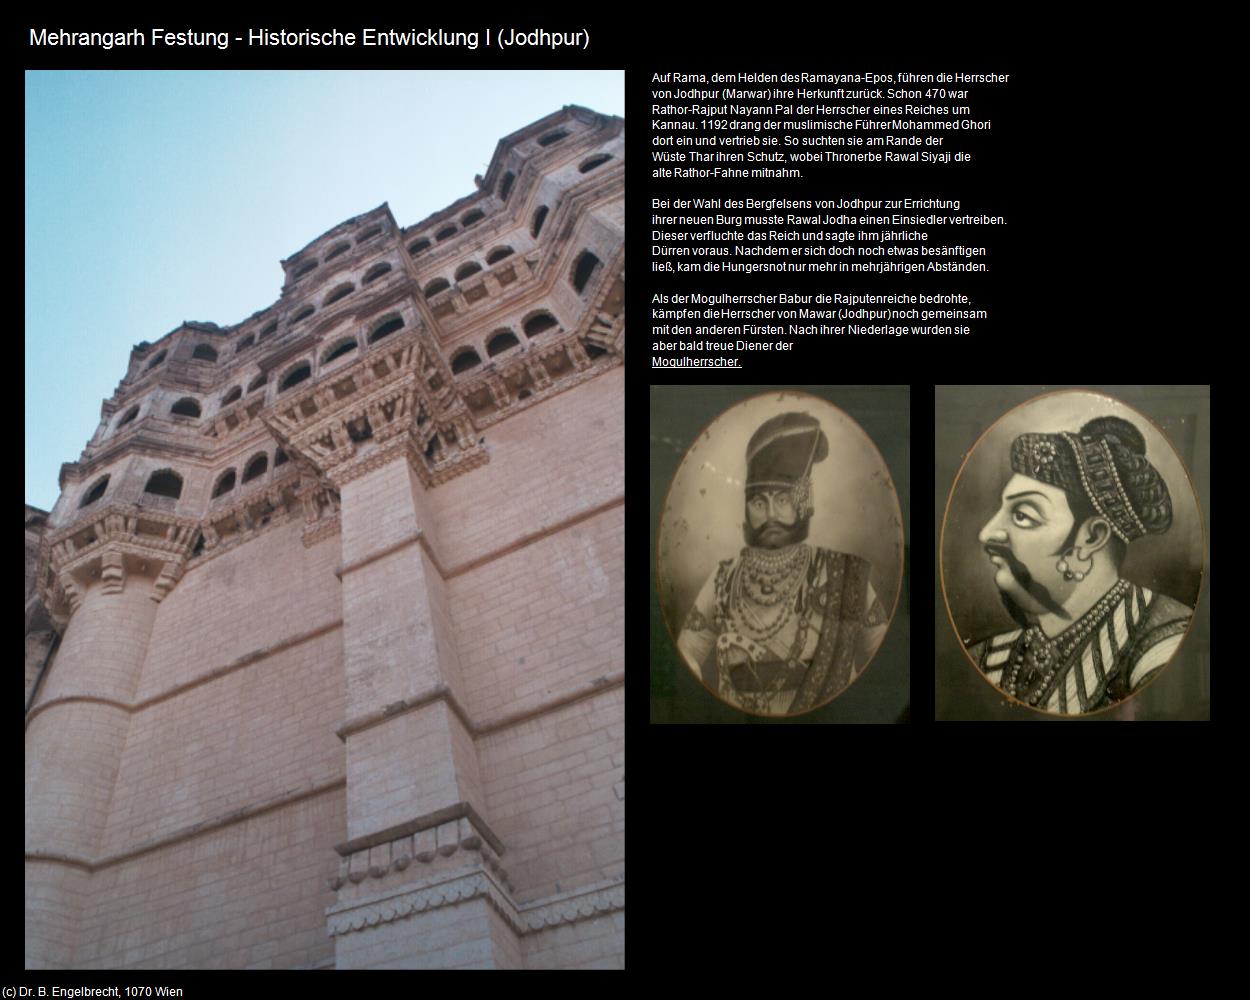 Mehrangarh Festung-Historische Entwicklung I (Jodhpur) in Rajasthan - das Land der Könige(c)B.Engelbrecht